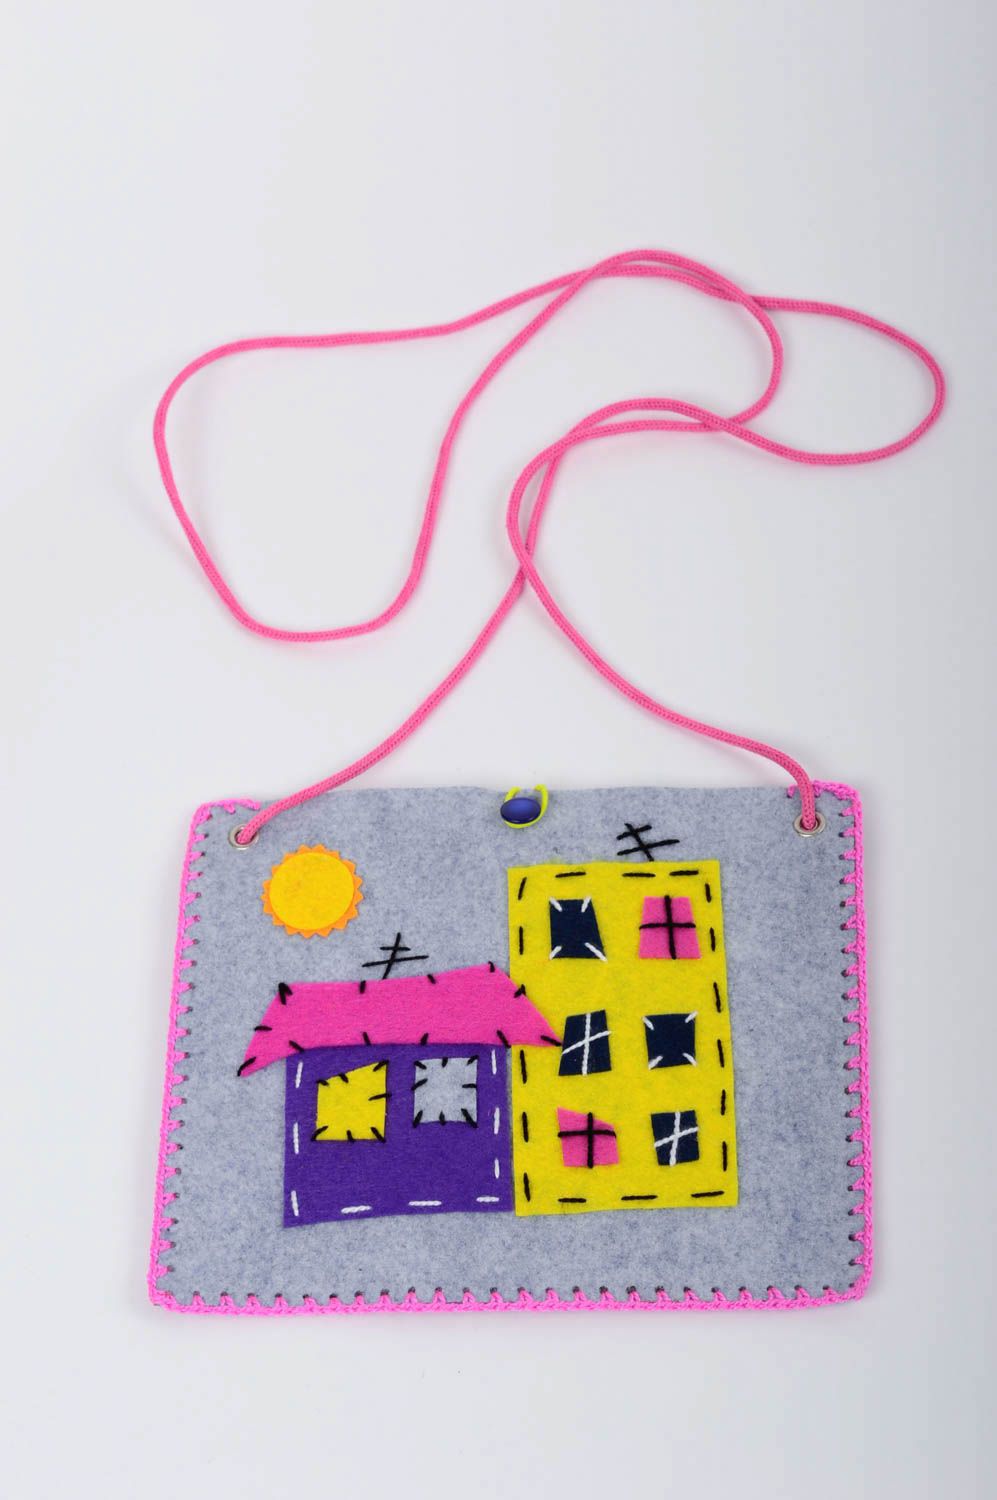 Handmade felt handbag small woolen purse wool accessories clutch bag for kids photo 1